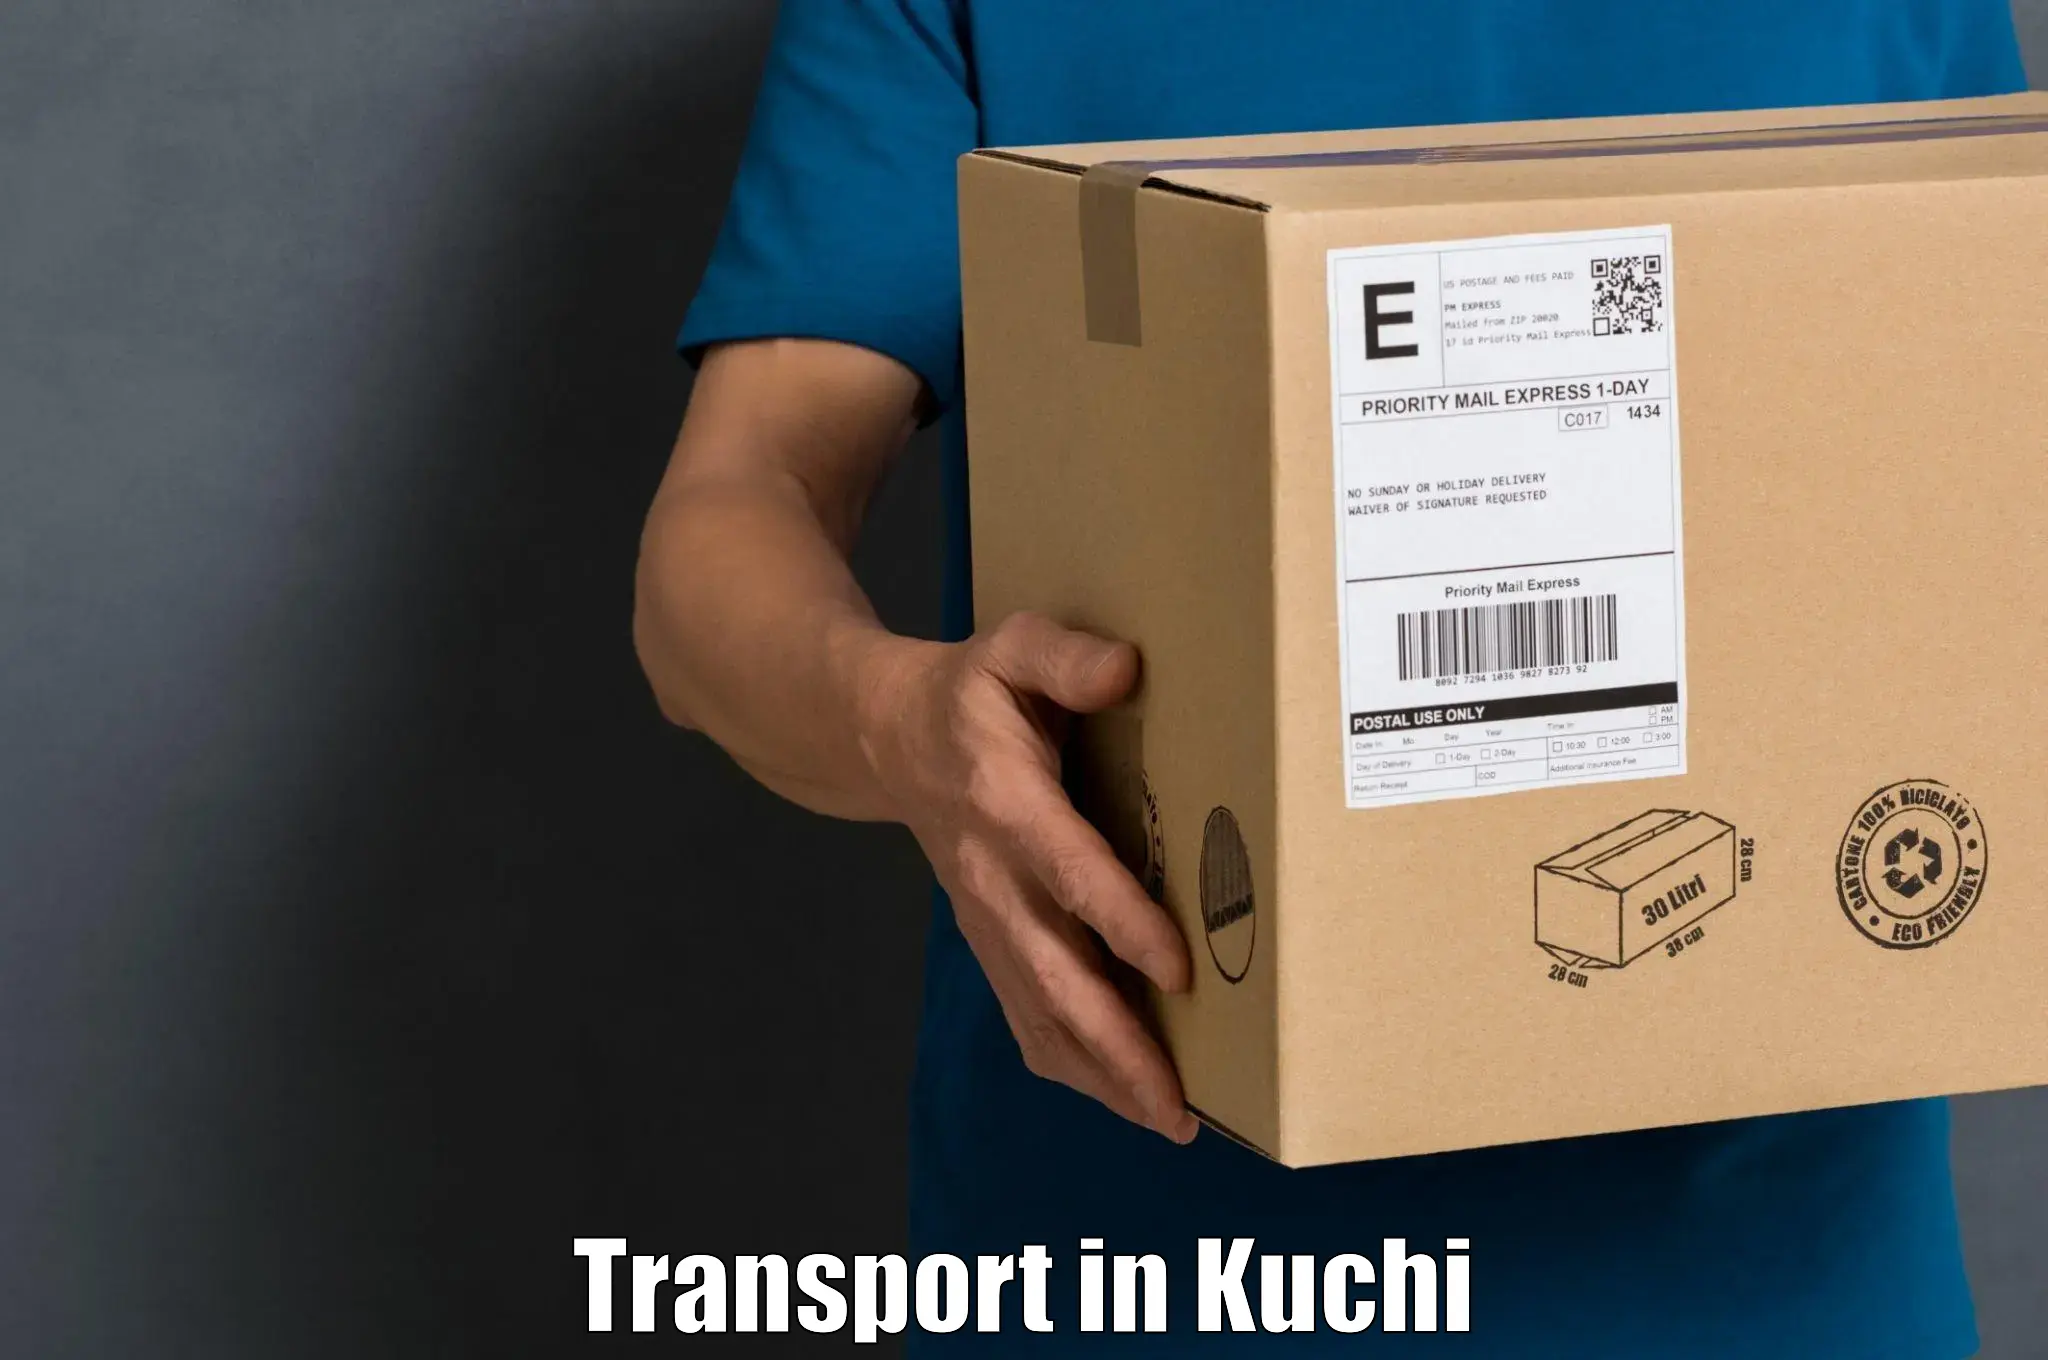 Interstate transport services in Kuchi